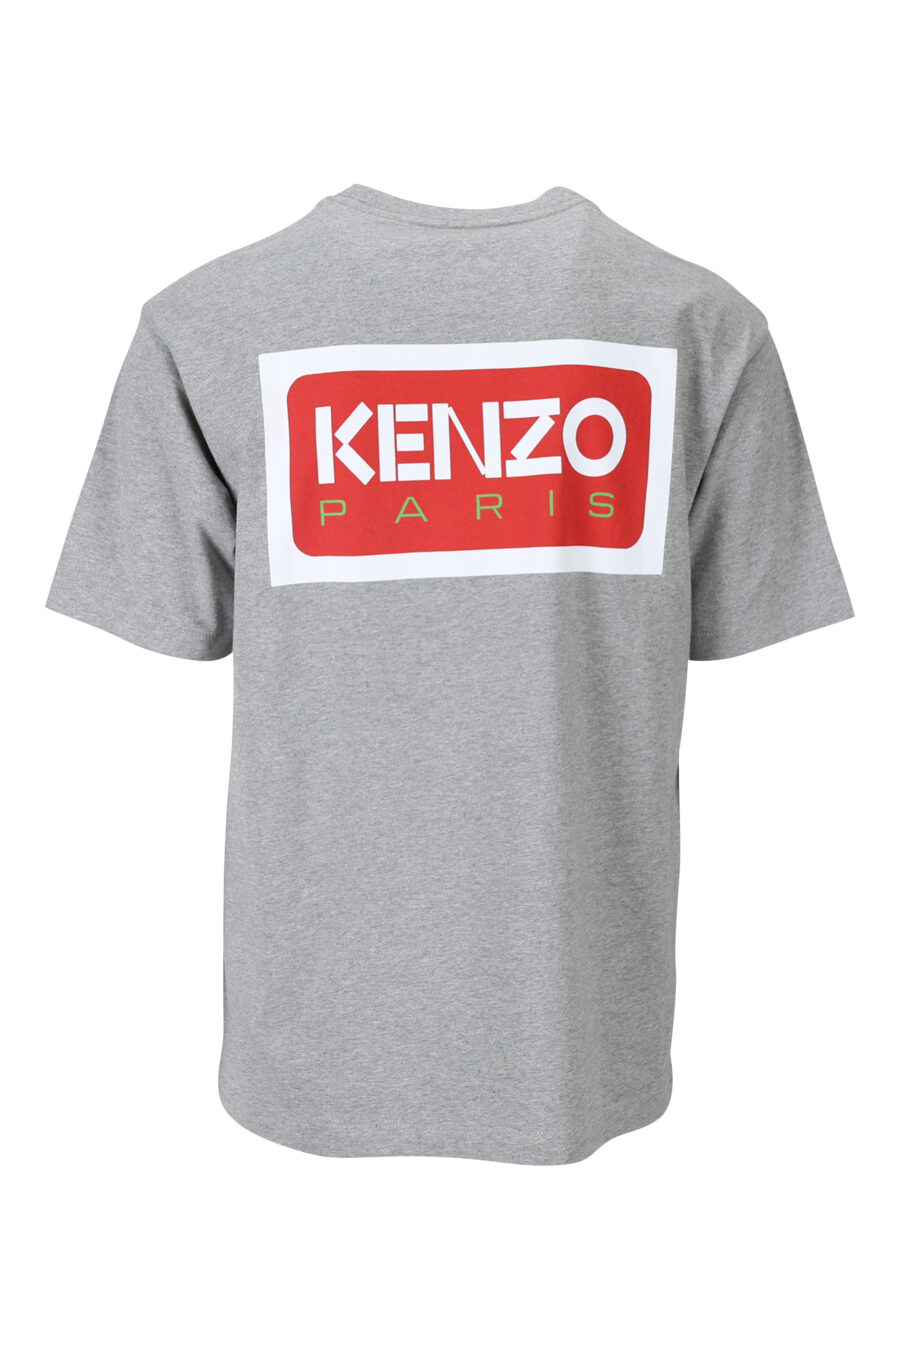 T-shirt gris avec minilogo "kenzo paris" - 3612230543188 1